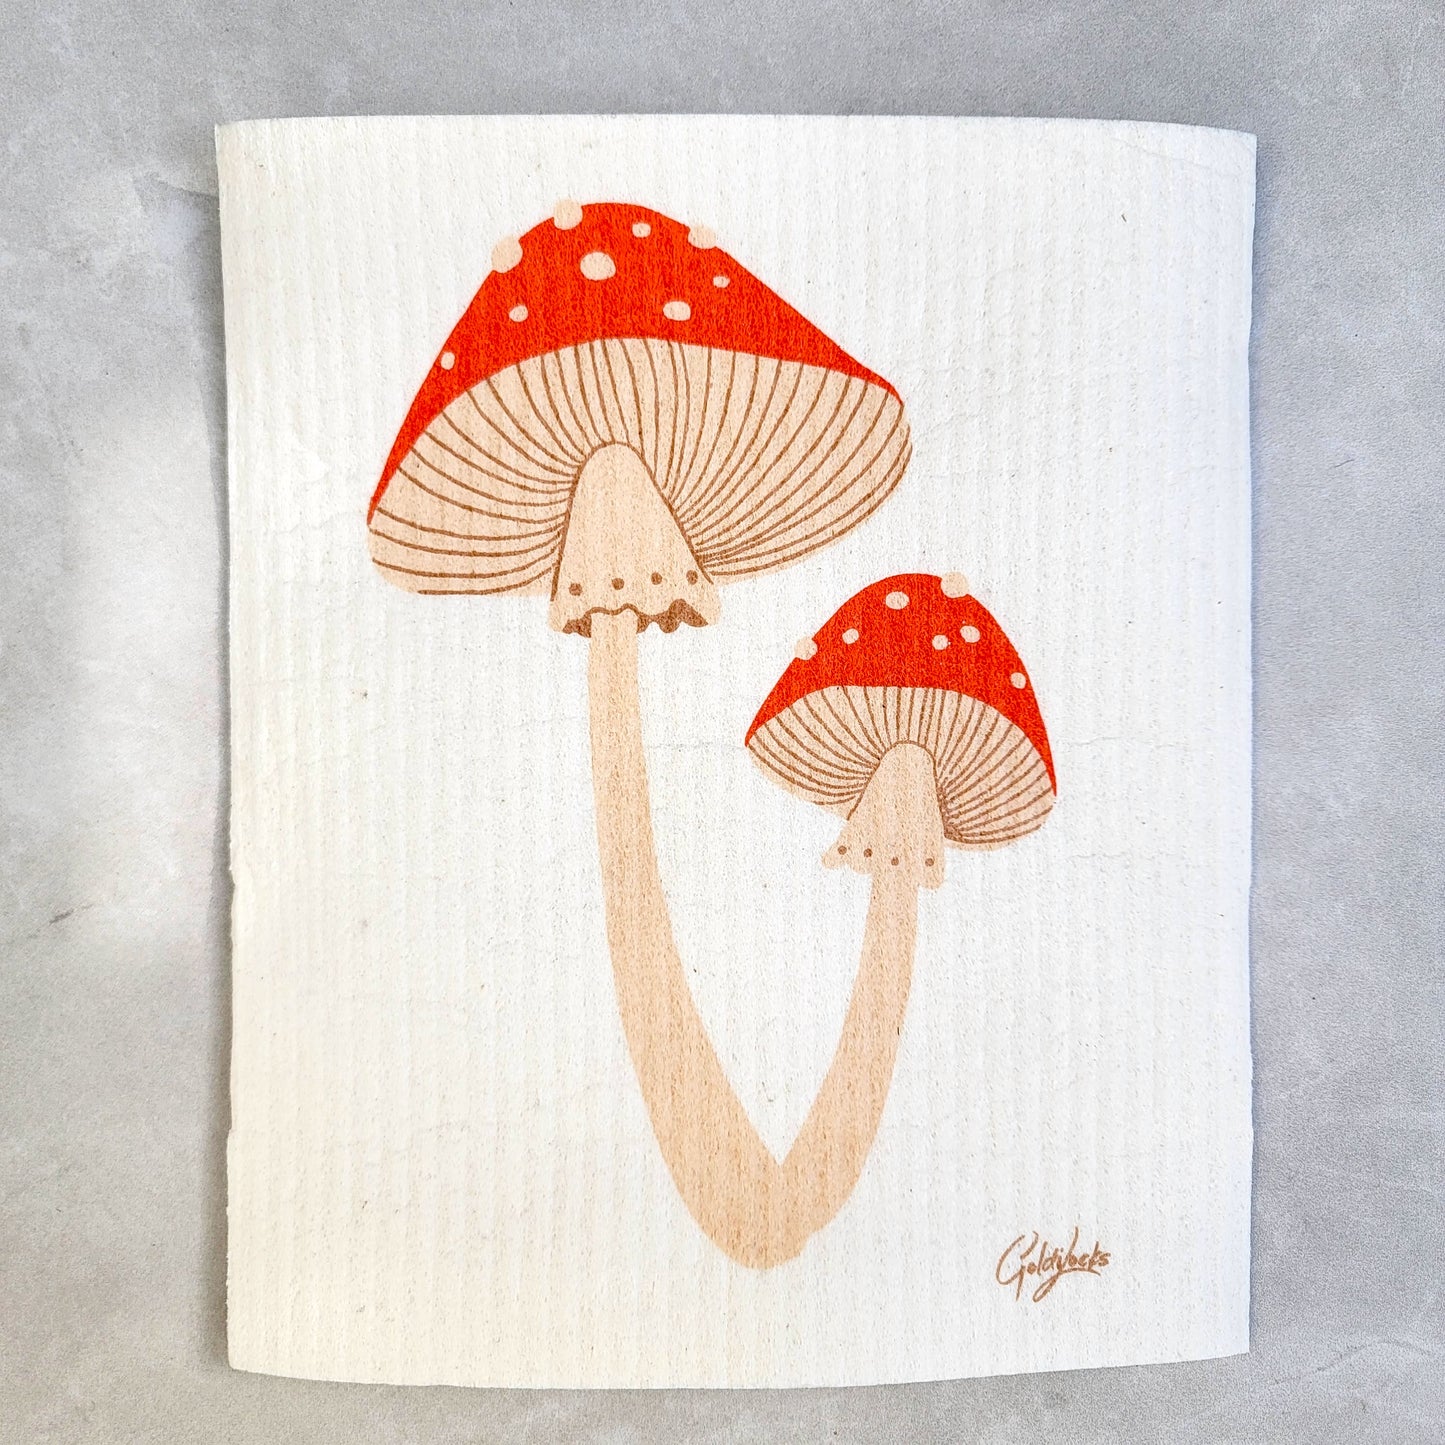 Swedish Dishcloth - Mushrooms